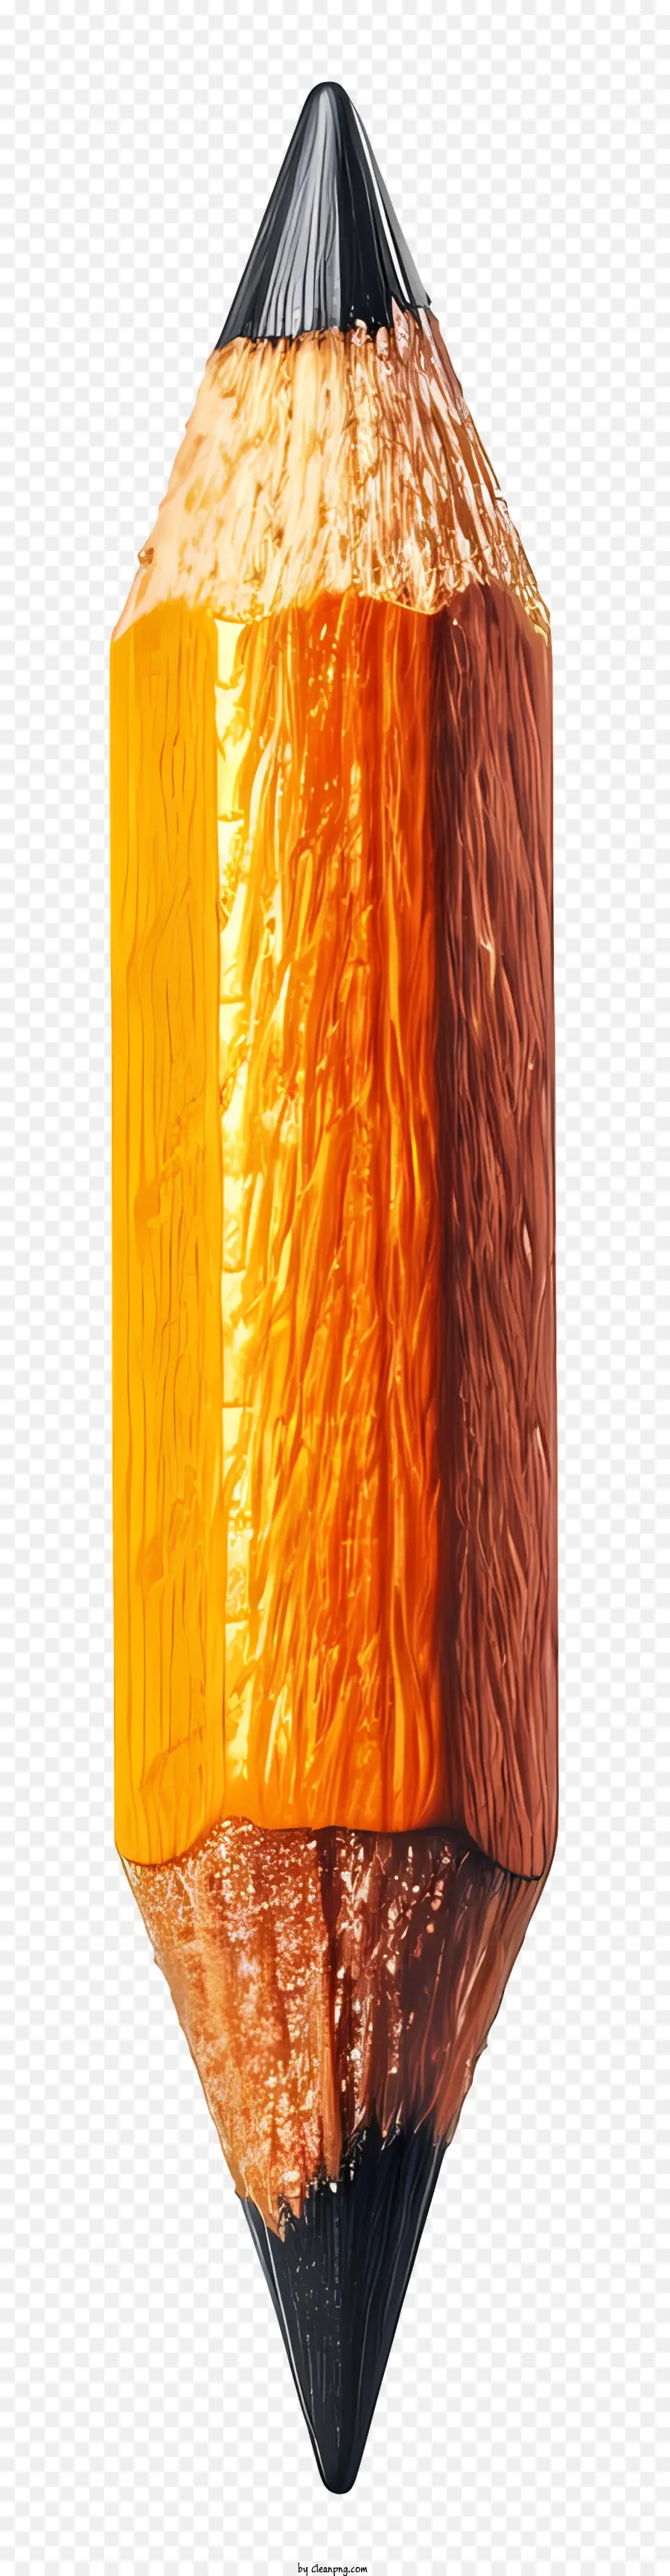 matita a matita colorata illusione di trama di profondità arancione e colore nero - Matita multicolore con consistenza e profondità realistiche